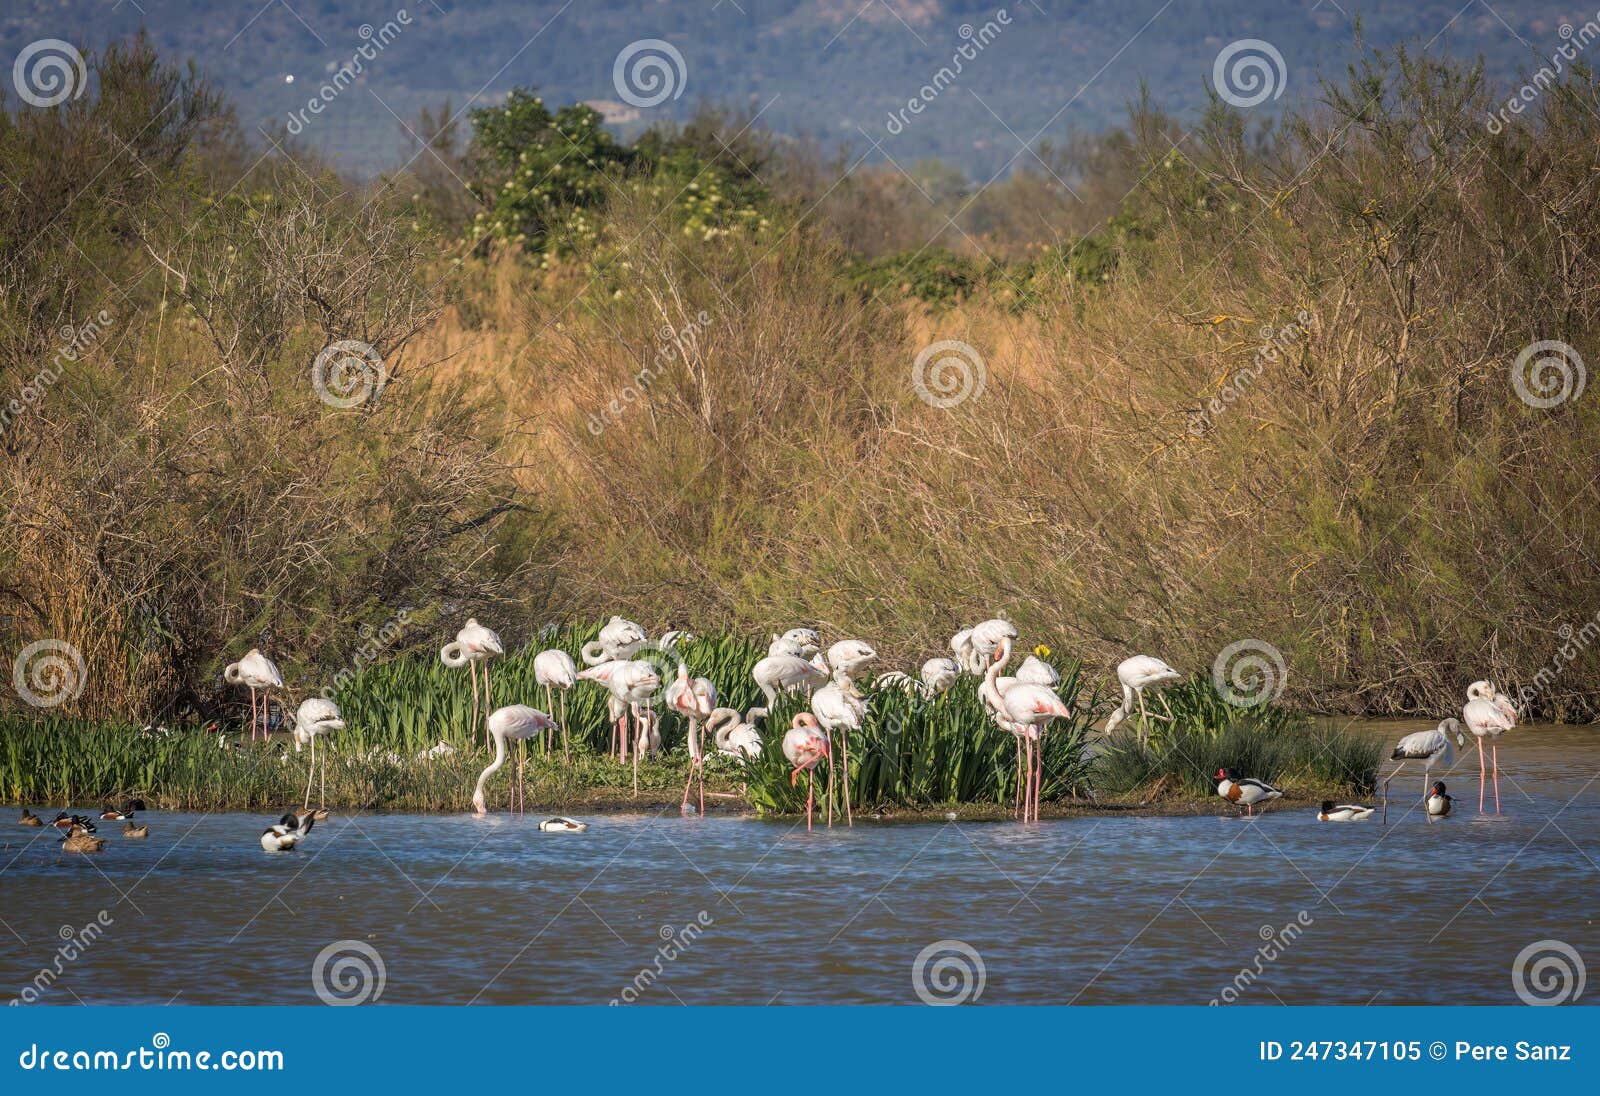 flamingos spotted at aiguamolls de l`emporda